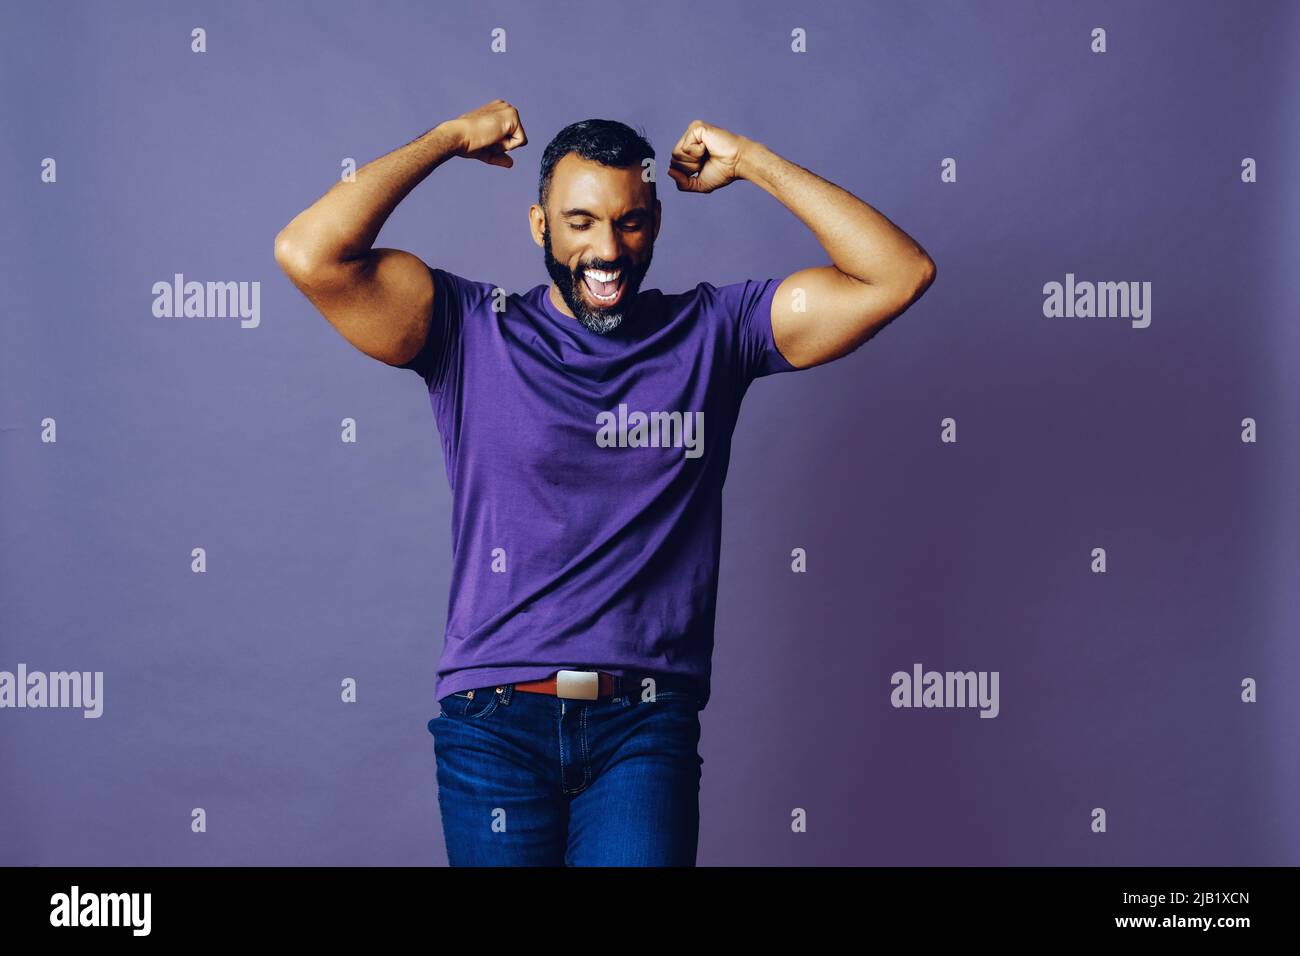 portrait d'un homme gagnant réussi avec une barbe et un t-shirt violet célébrant avec bras vers le haut sur un fond violet studio Banque D'Images